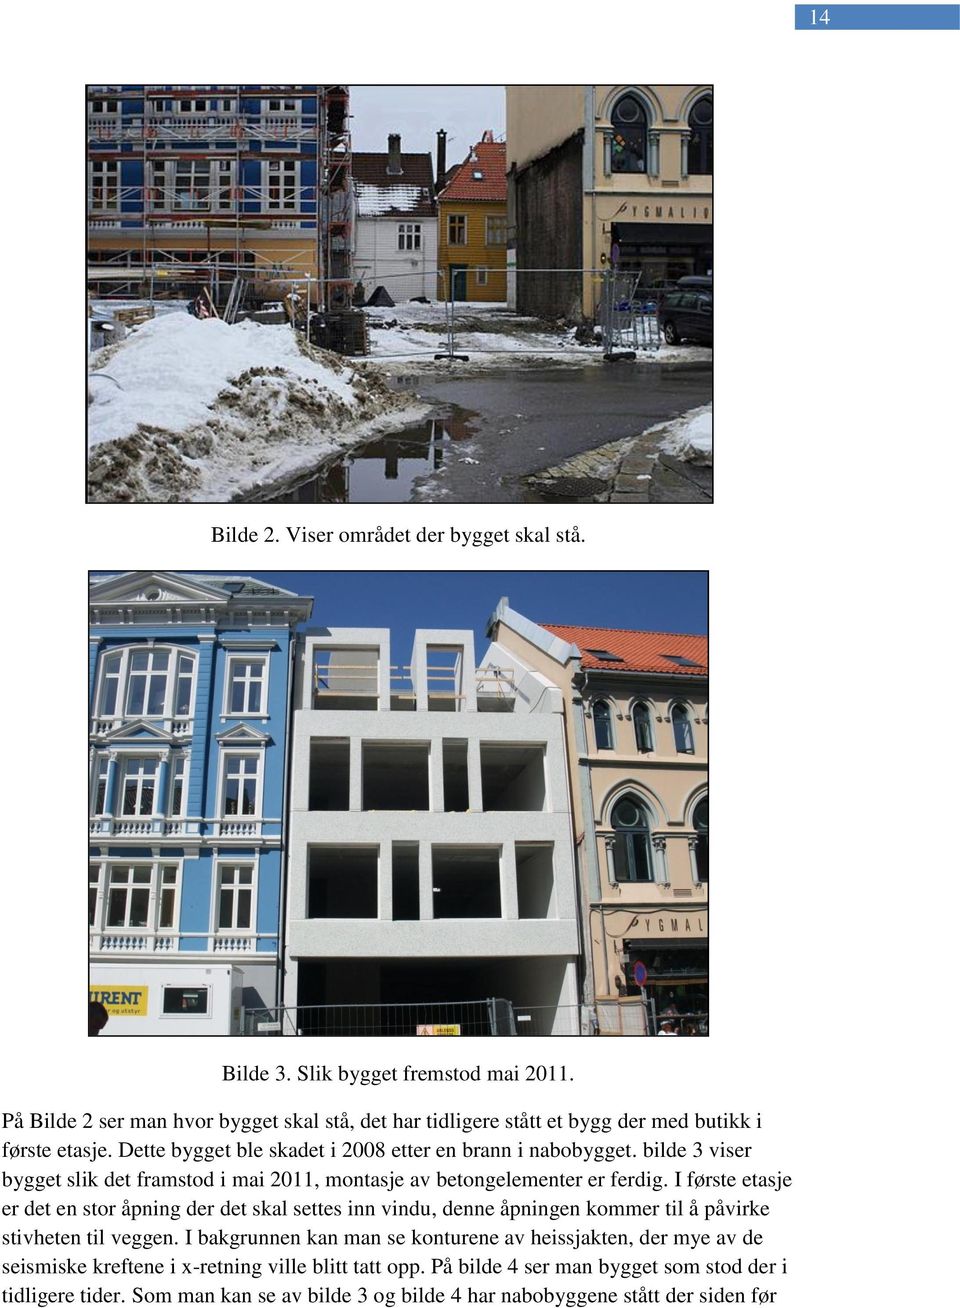 bilde 3 viser bygget slik det framstod i mai 2011, montasje av betongelementer er ferdig.